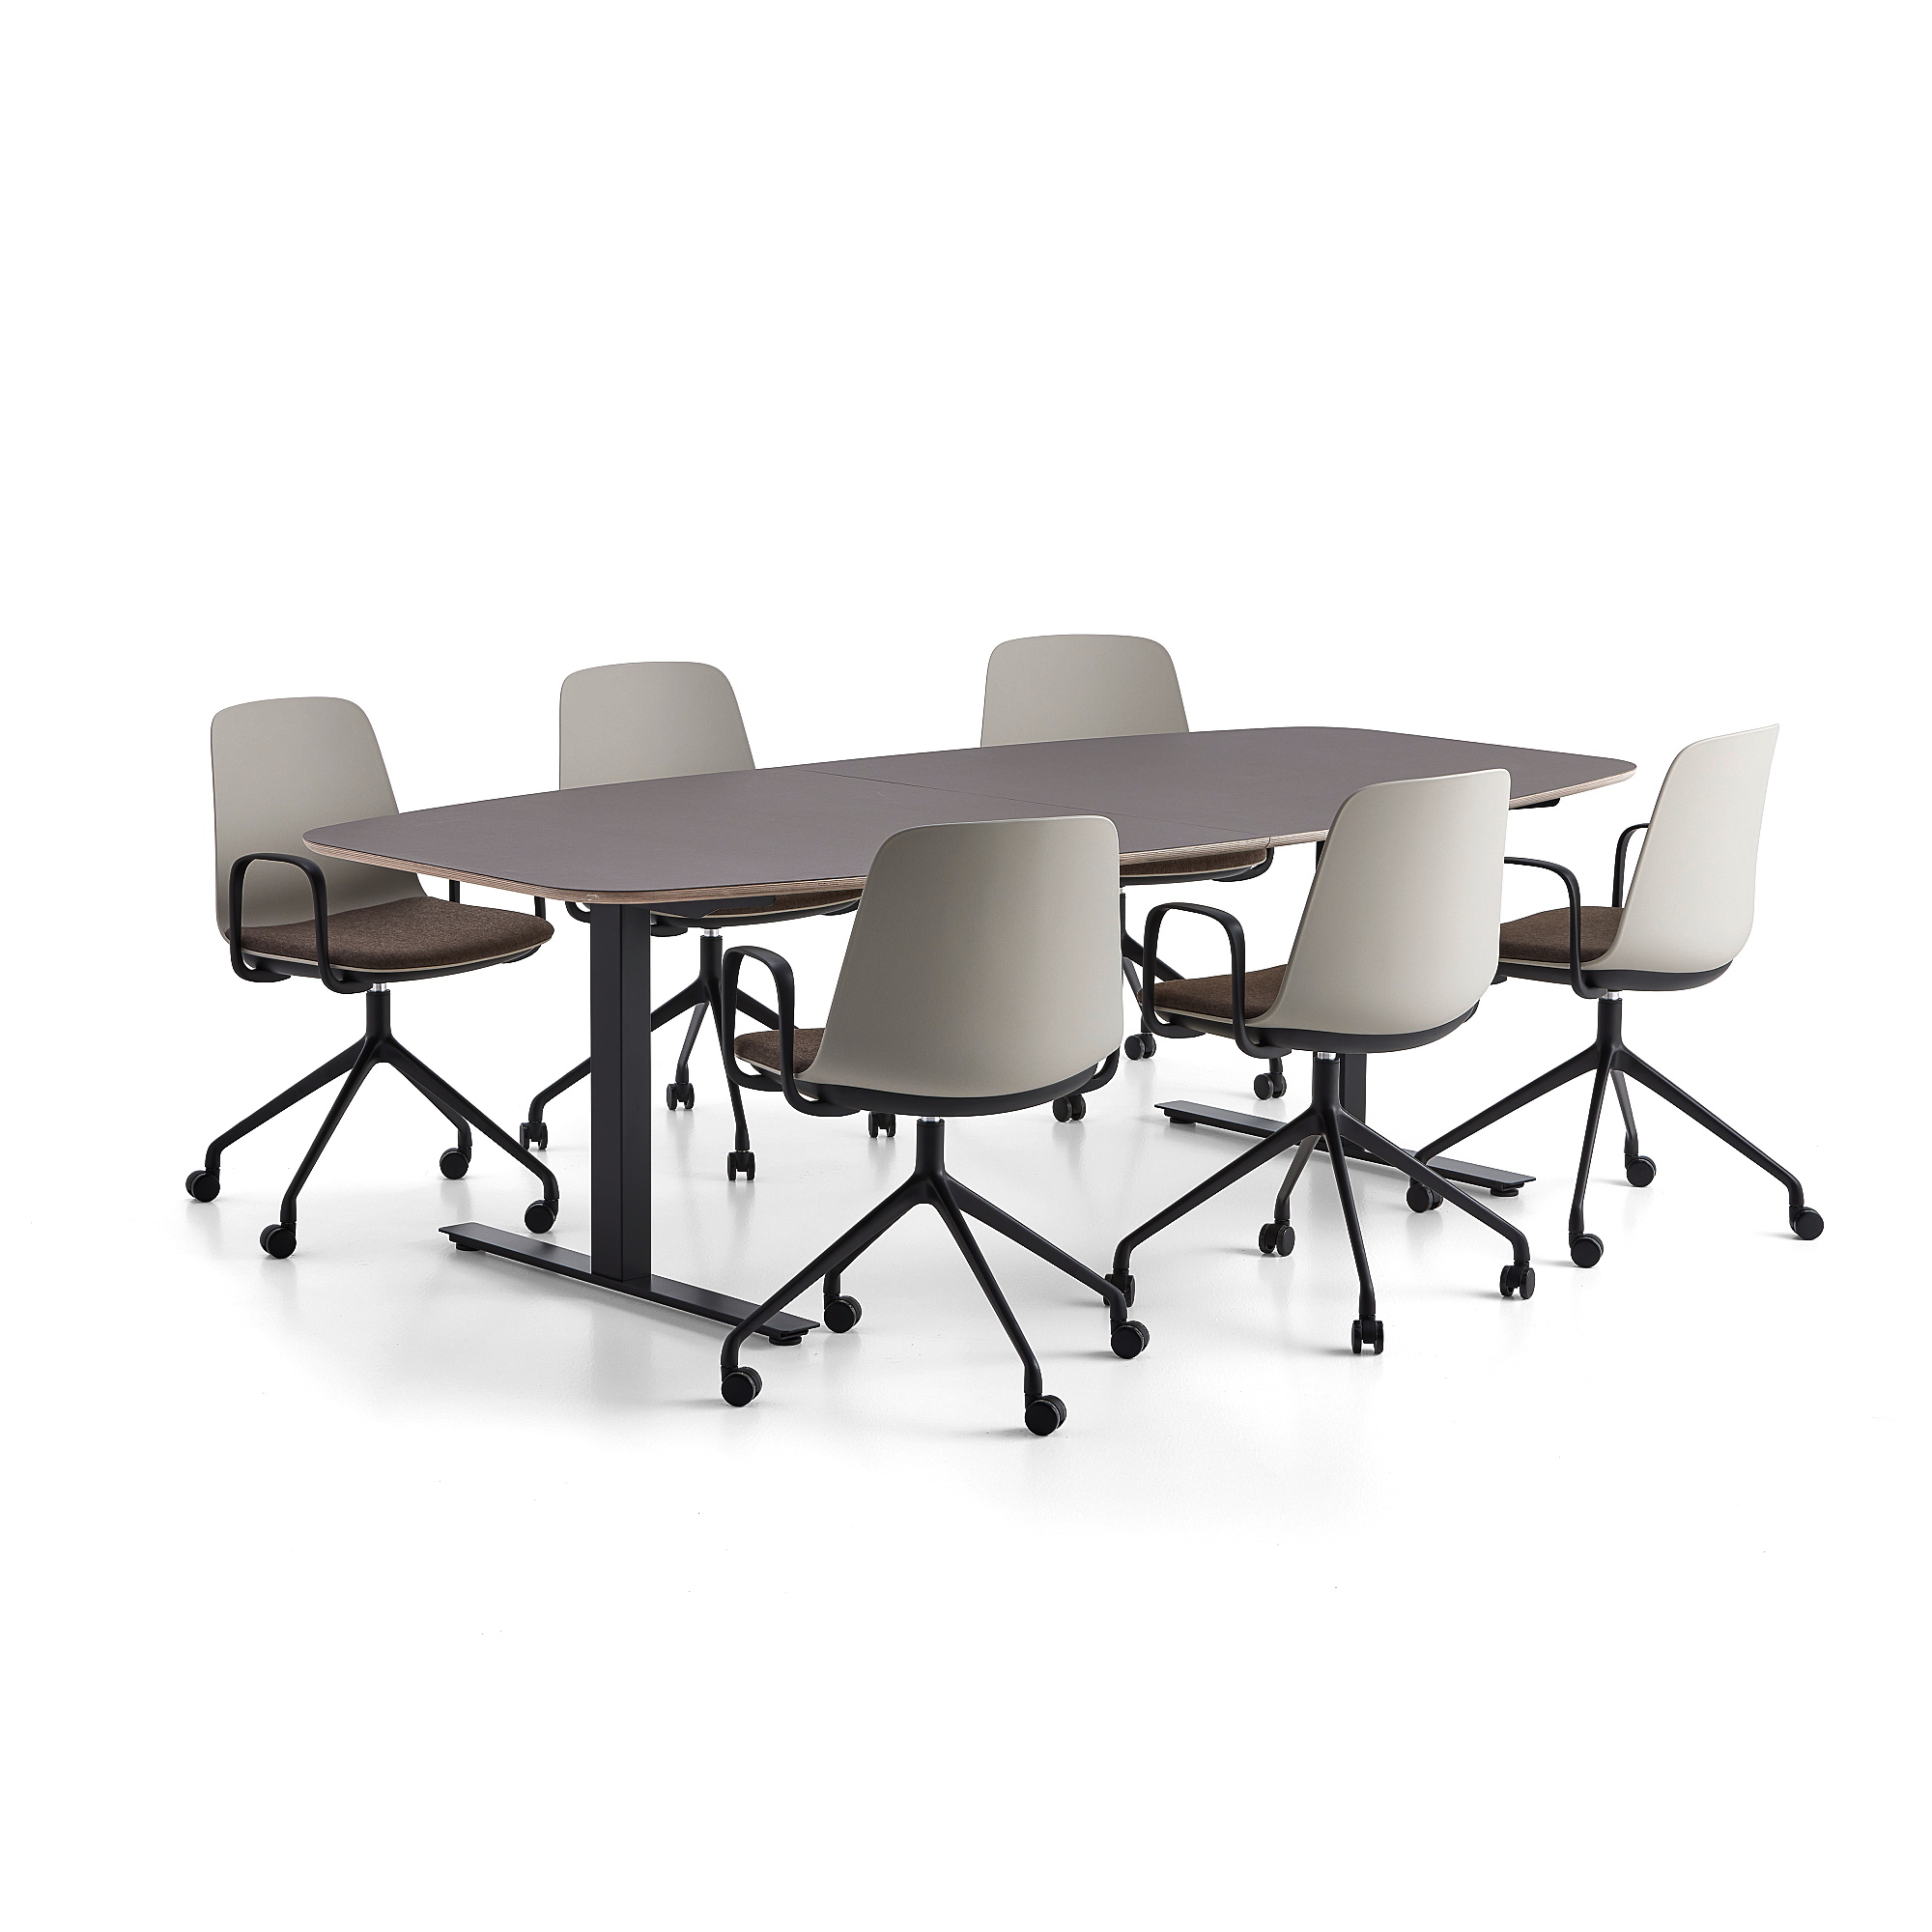 Rokovací nábytok AUDREY + LANGFORD, šedohnedý stôl + 6 stoličiek, hnedá